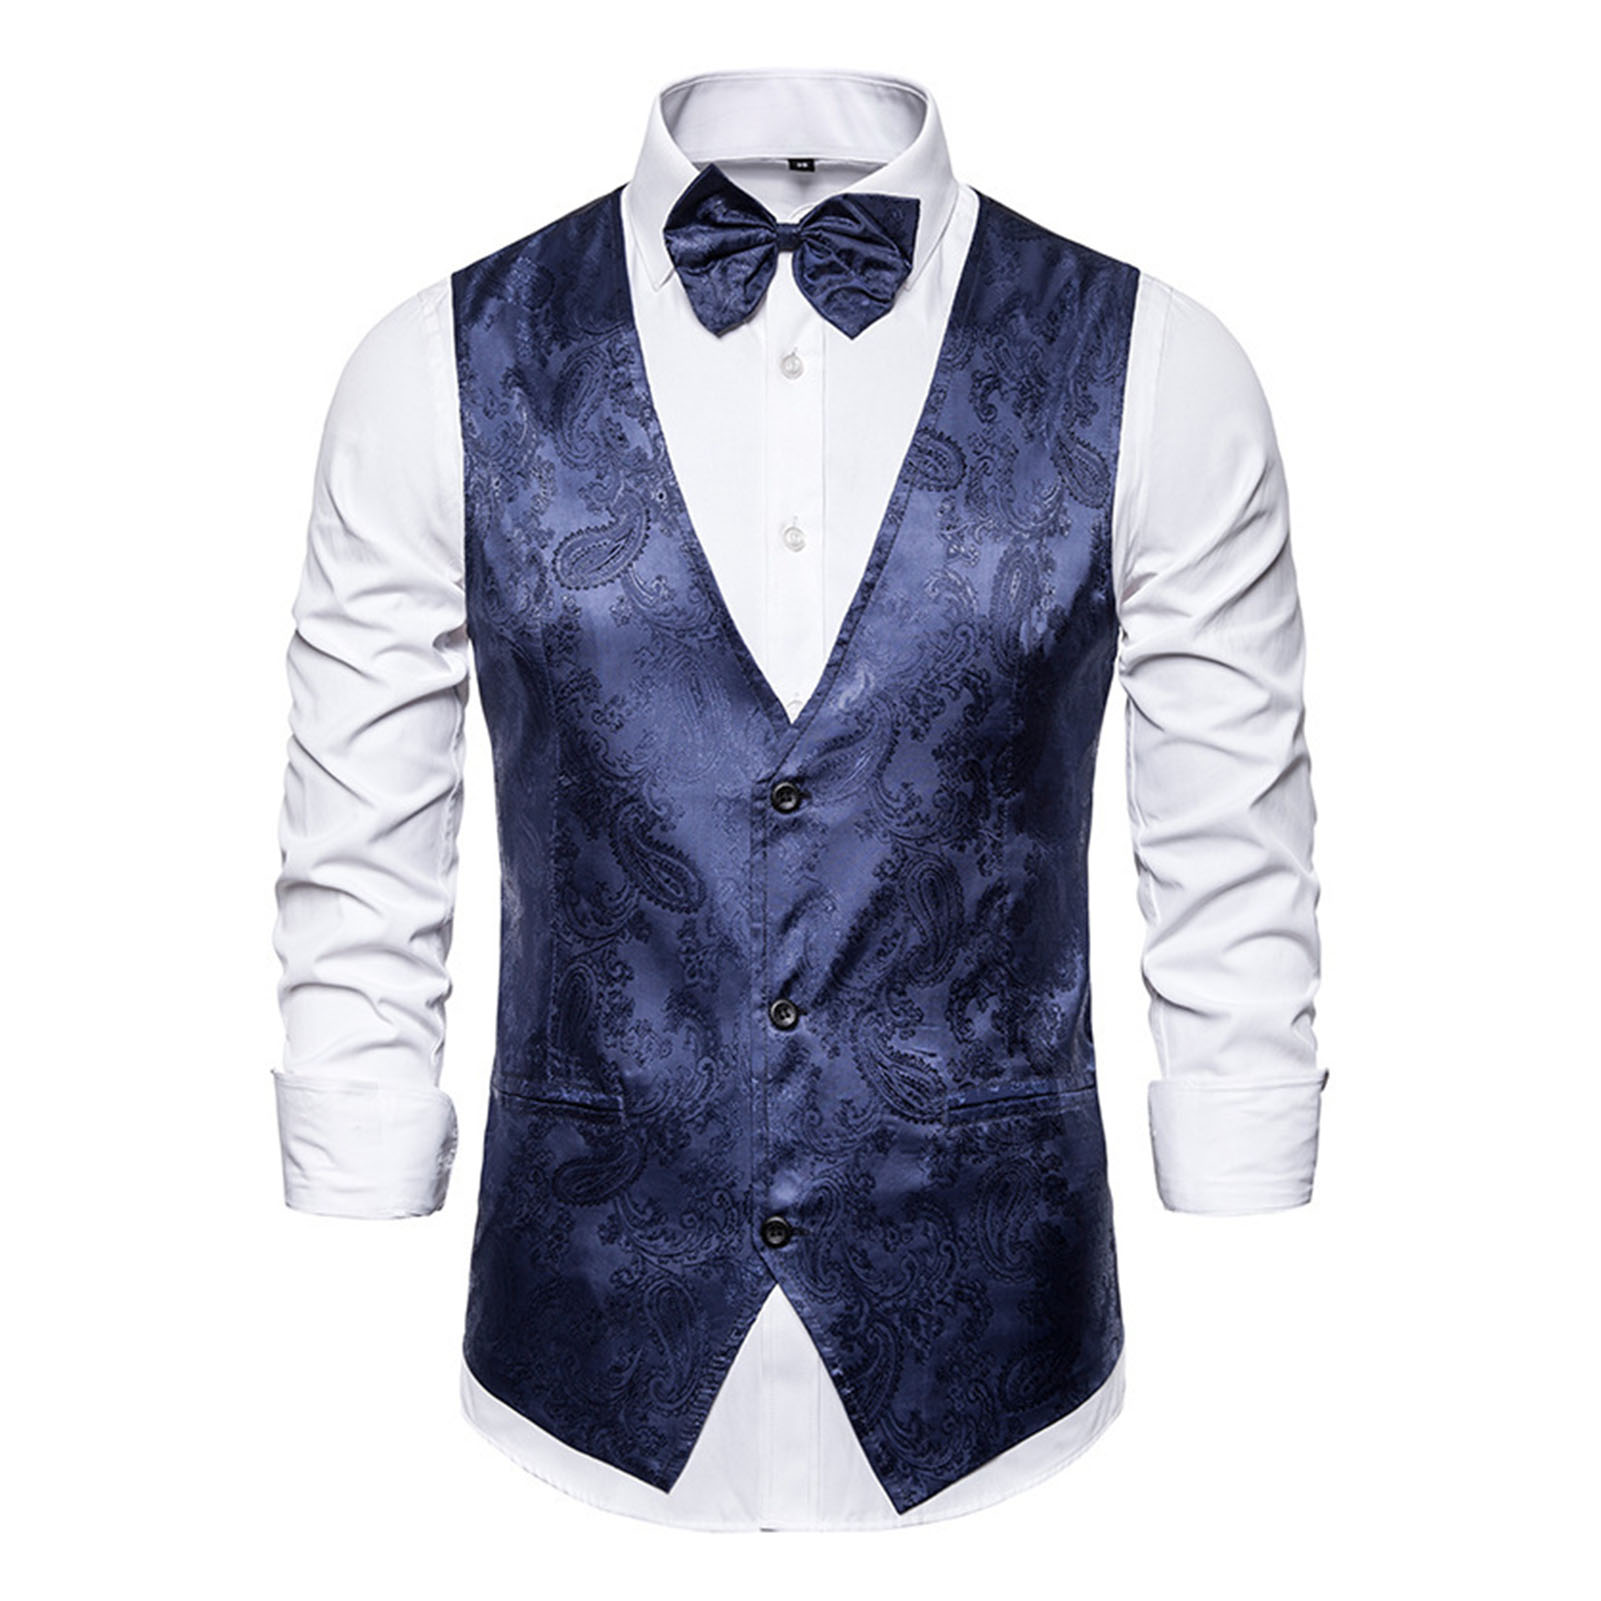 wenchengbo Groom Vest Men Suit Vest Men s Vintage Print Suit Vest Perfect